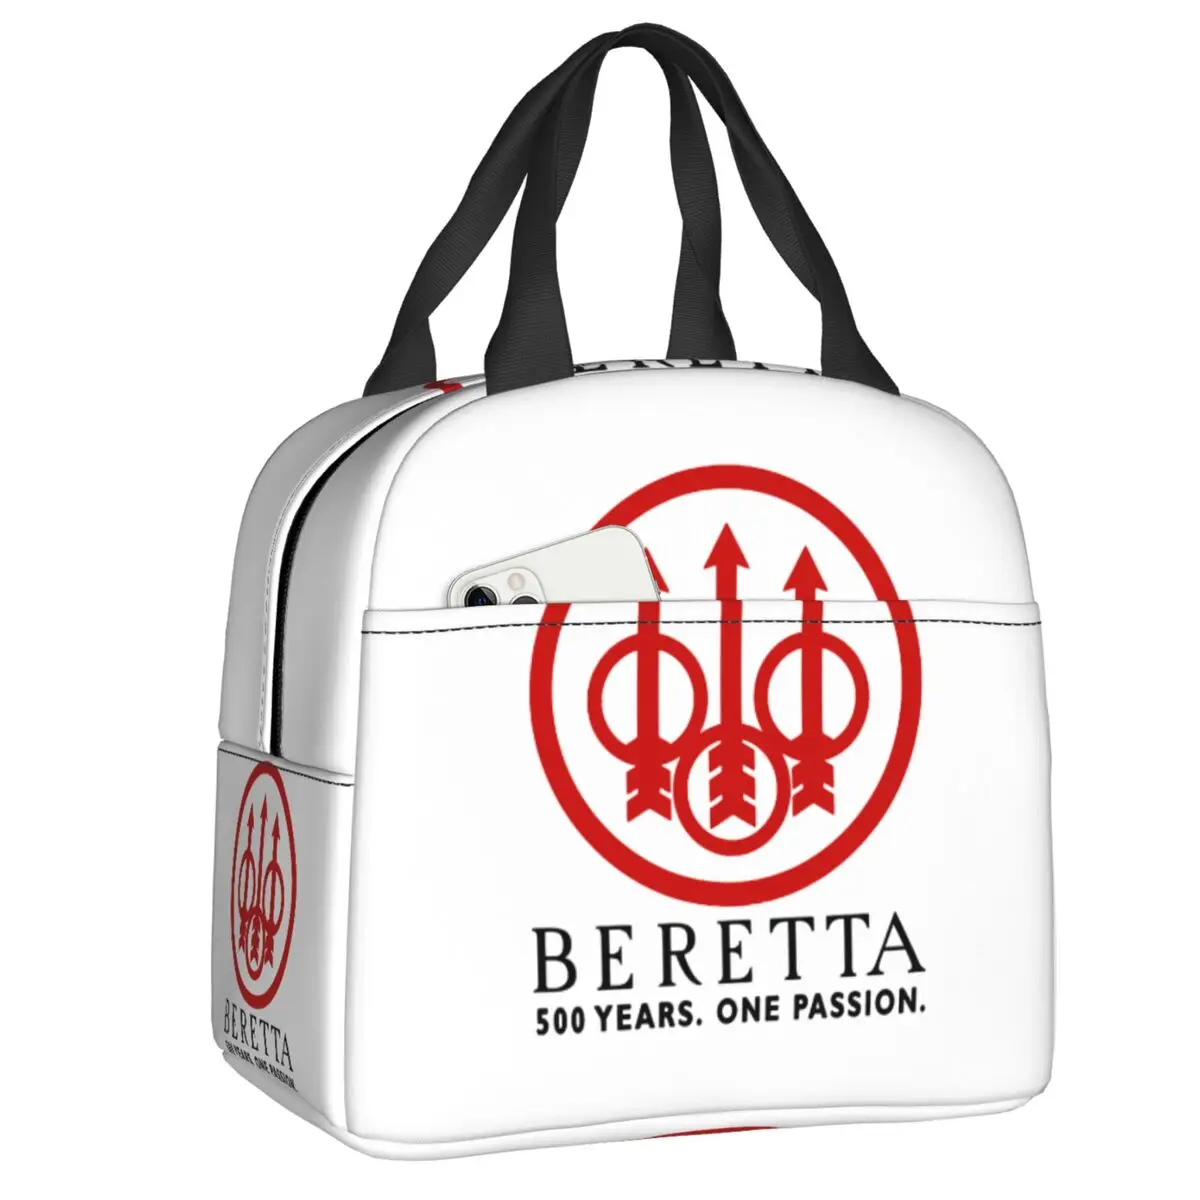 

Термоизолированный Ланч-бокс Beretta для женщин, Индивидуальная сумка-холодильник для детей, школьная сумка-тоут для работы, пикника